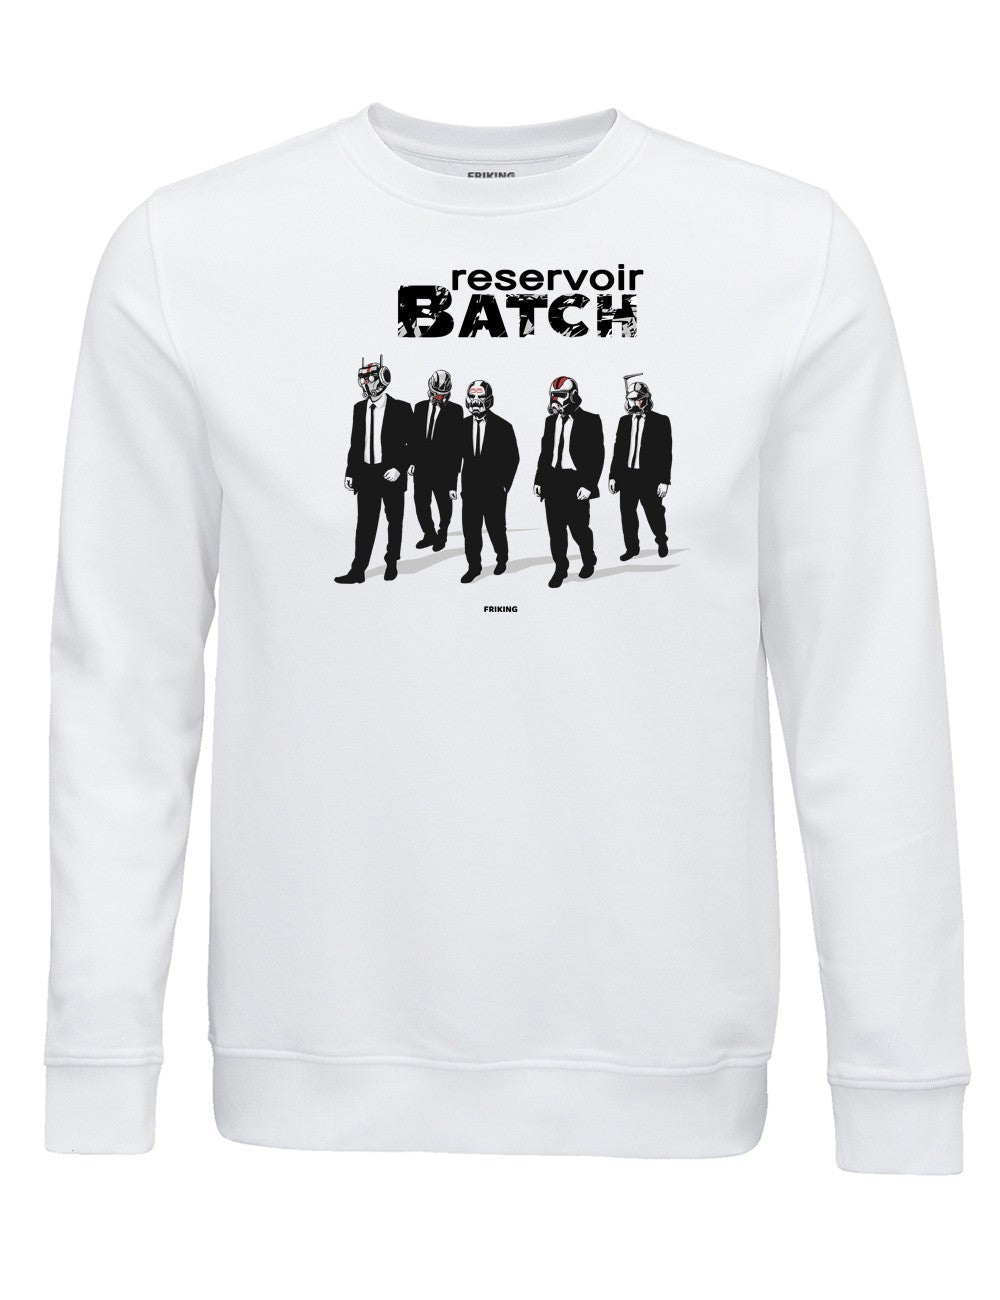  Reservoir Batch 